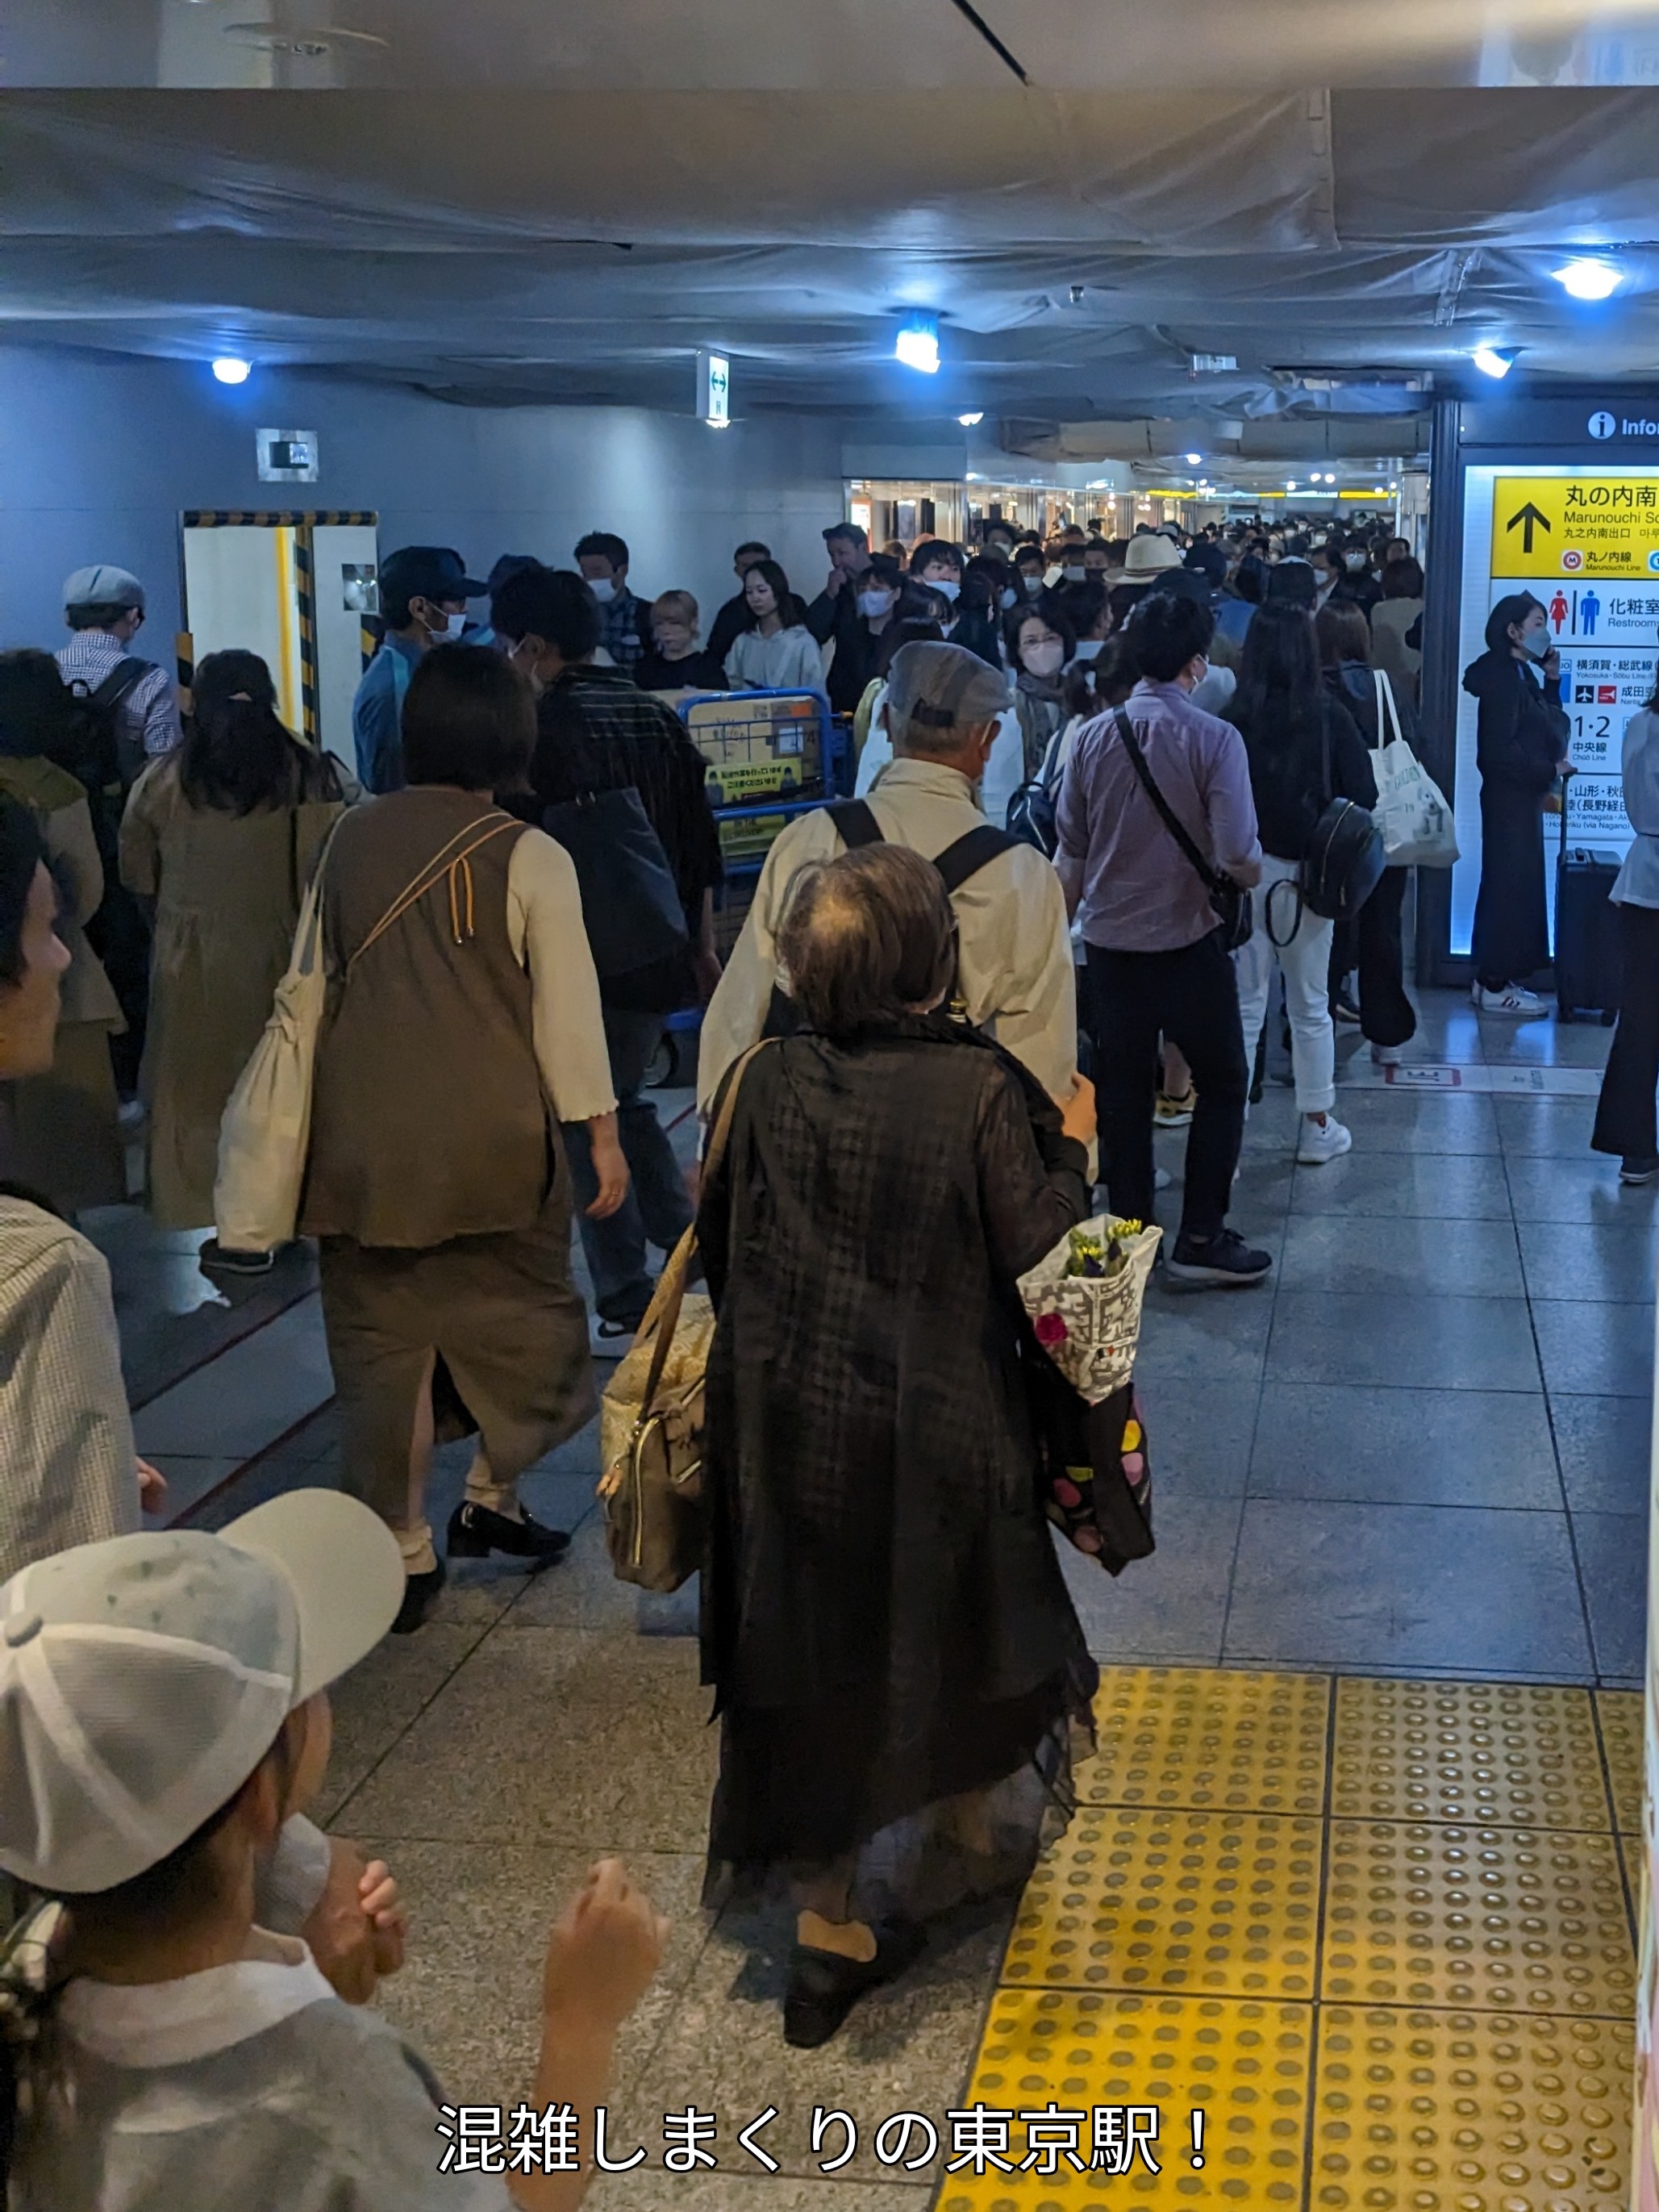 混雑しまくりの東京駅